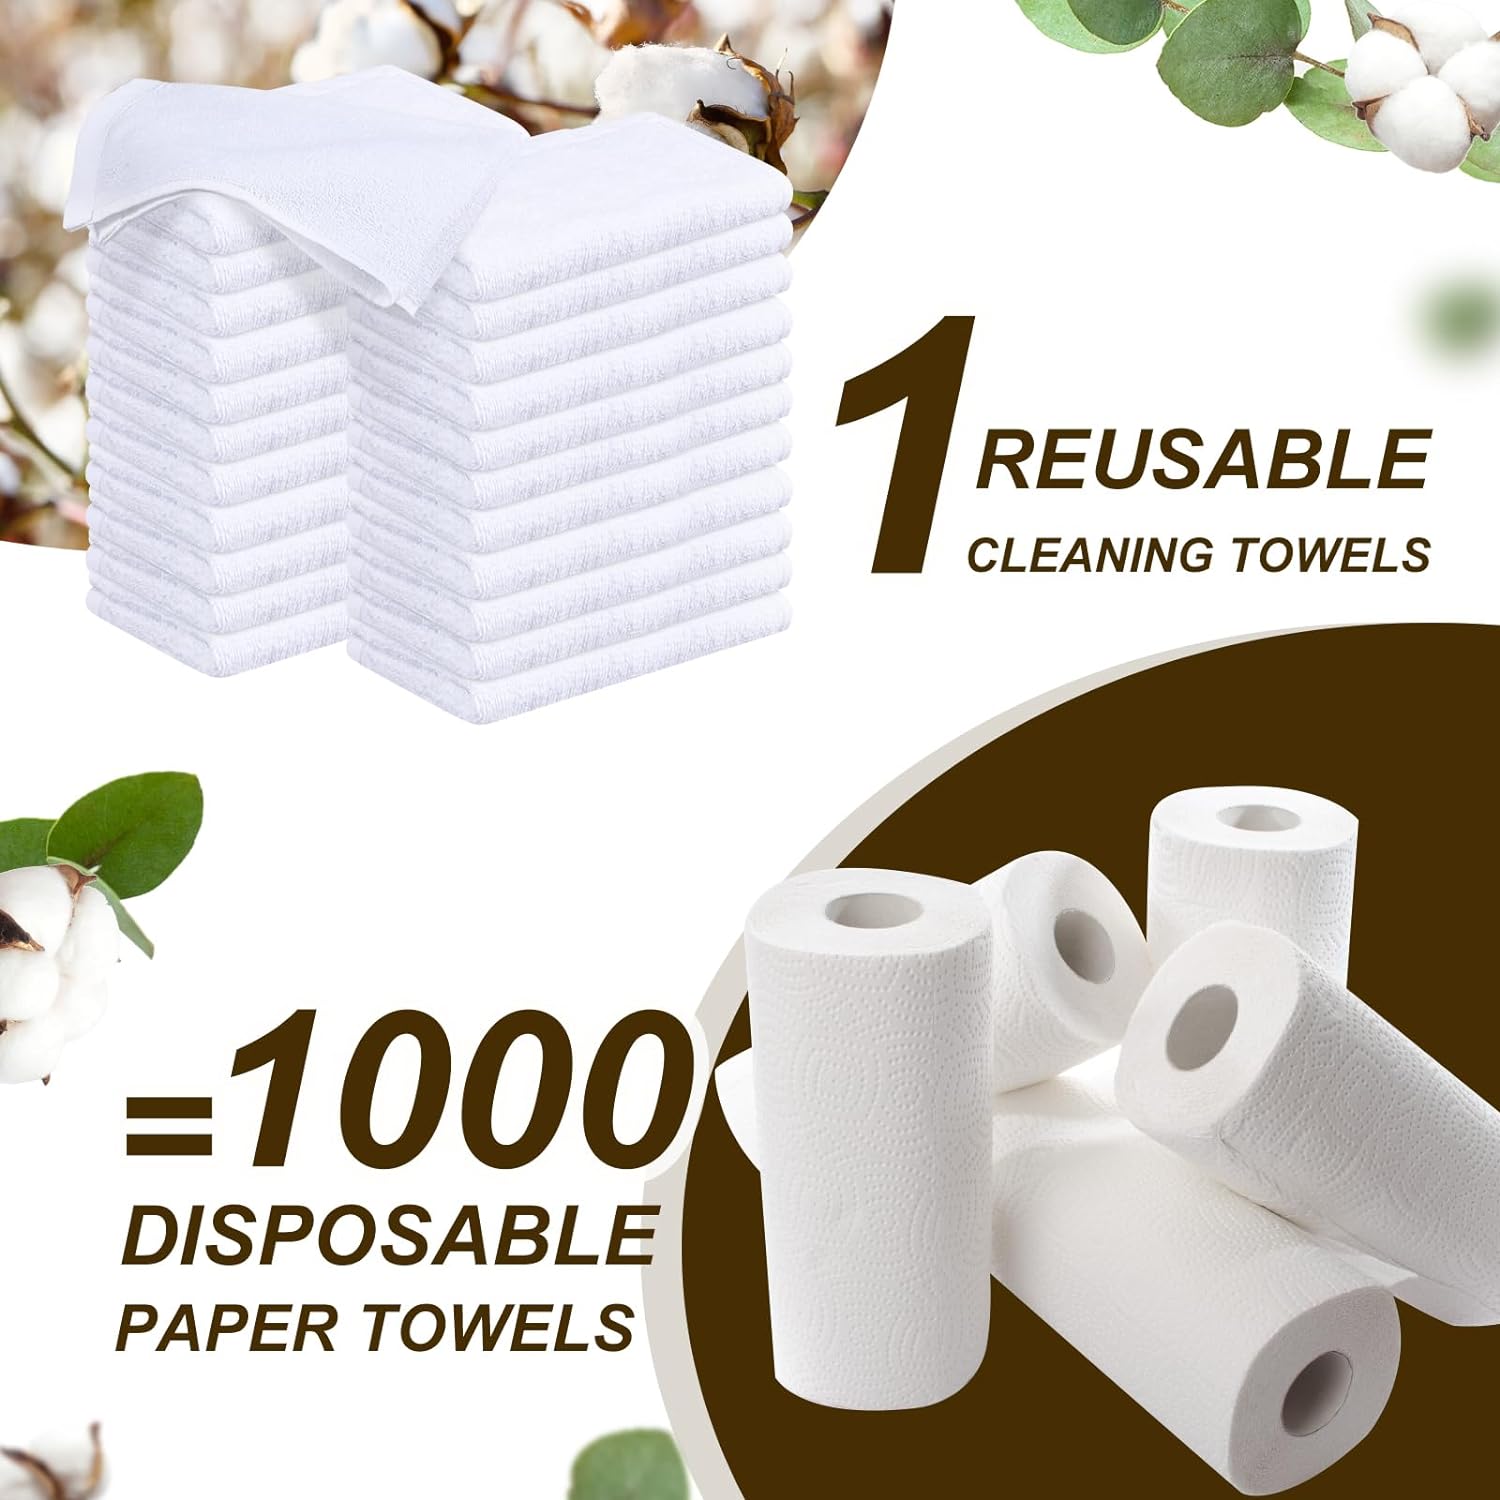 200 toallas de rizo de algodón a granel, paños de limpieza de algodón blanco